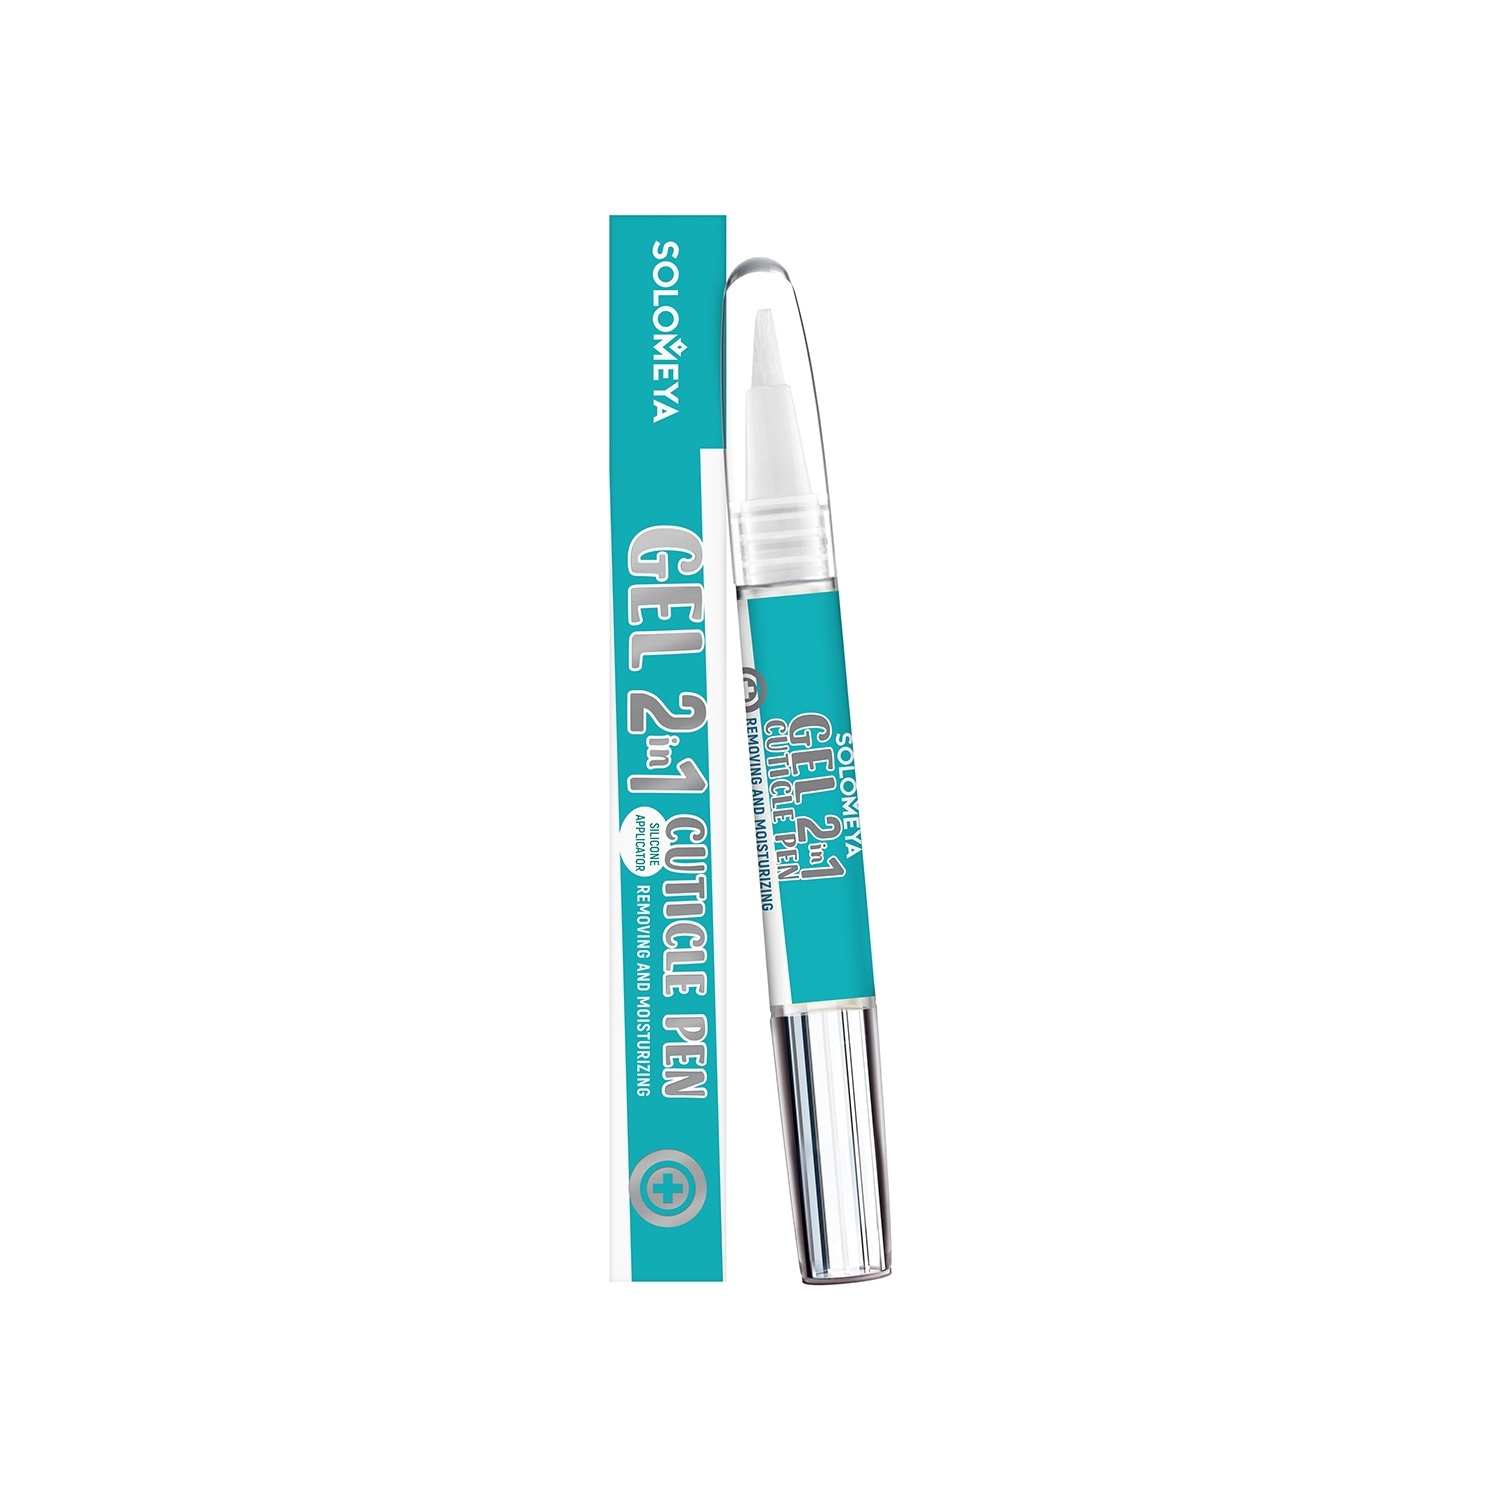 Гель 2в1 для удаления и увлажнения кутикулы в карандаше Cuticle Pen VISAGEHALL